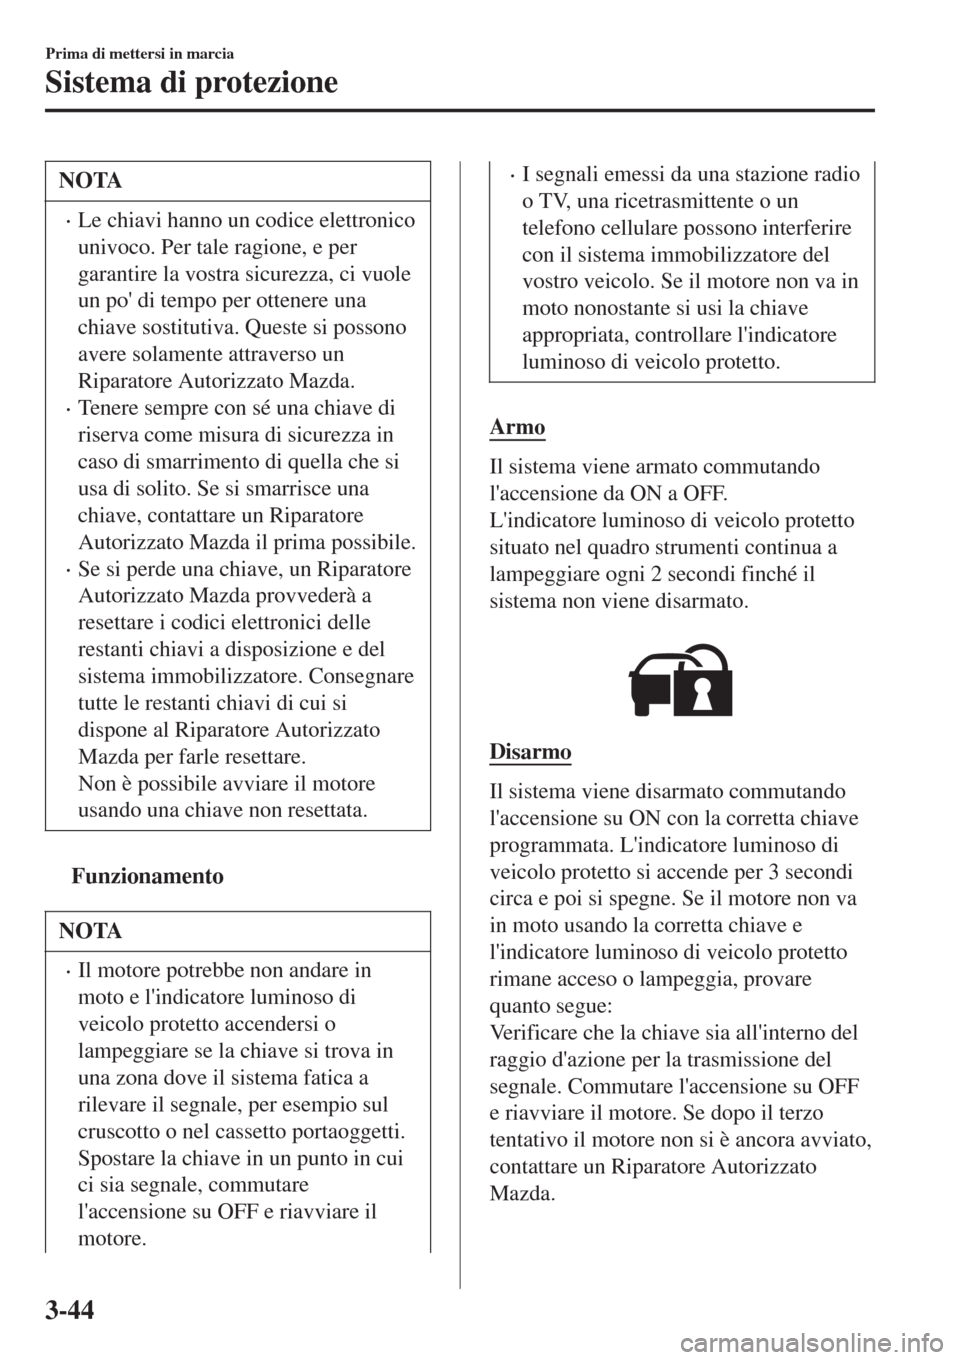 MAZDA MODEL CX-3 2015  Manuale del proprietario (in Italian) NOTA
•Le chiavi hanno un codice elettronico
univoco. Per tale ragione, e per
garantire la vostra sicurezza, ci vuole
un po di tempo per ottenere una
chiave sostitutiva. Queste si possono
avere sola